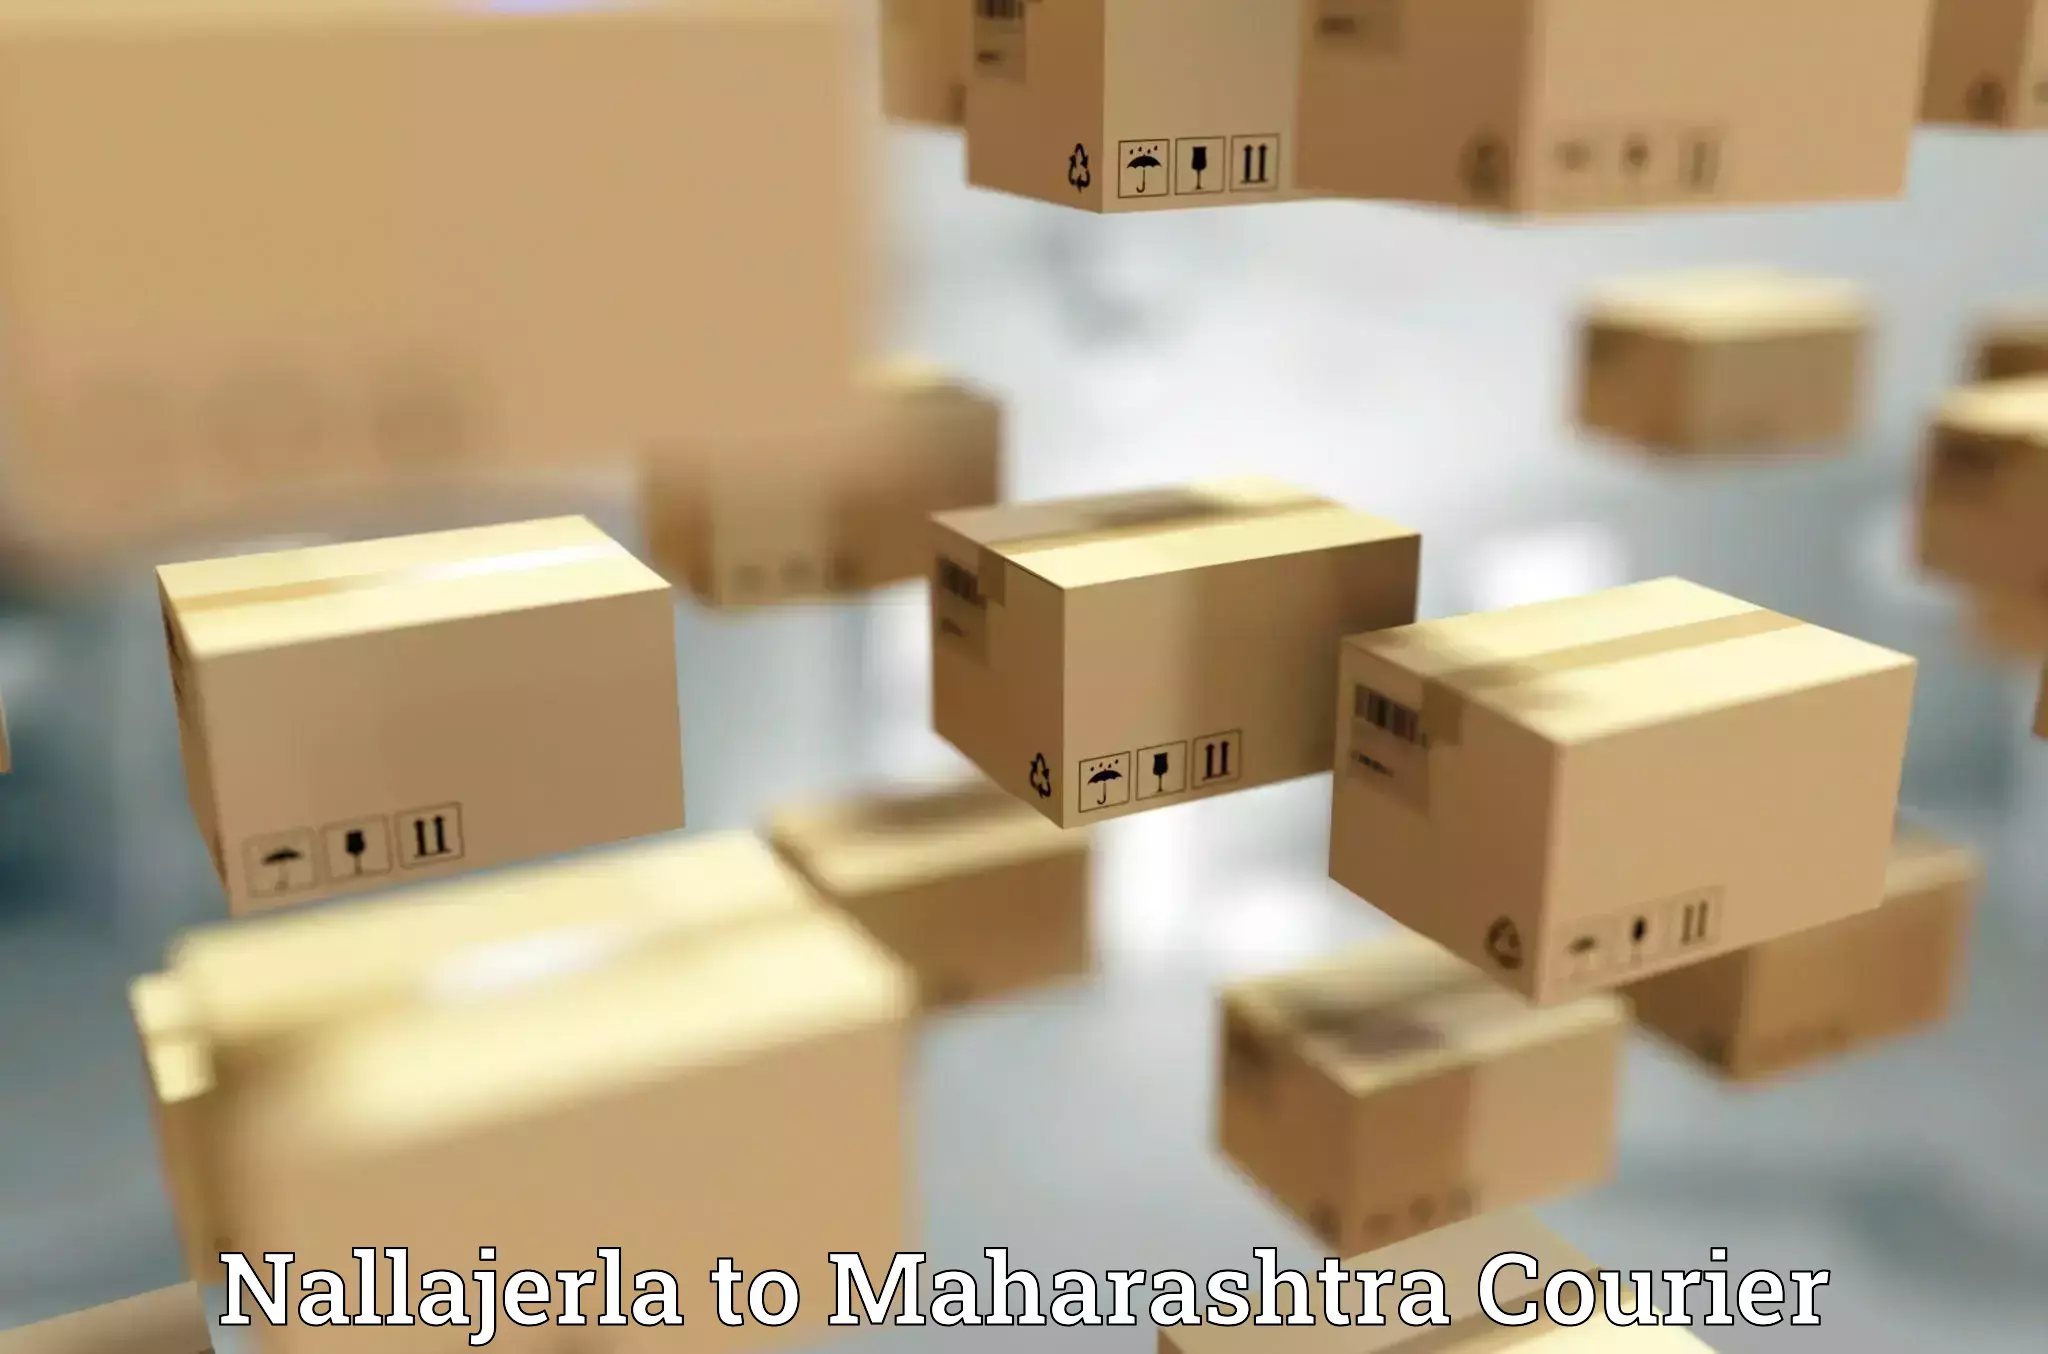 Retail shipping solutions Nallajerla to Maharashtra